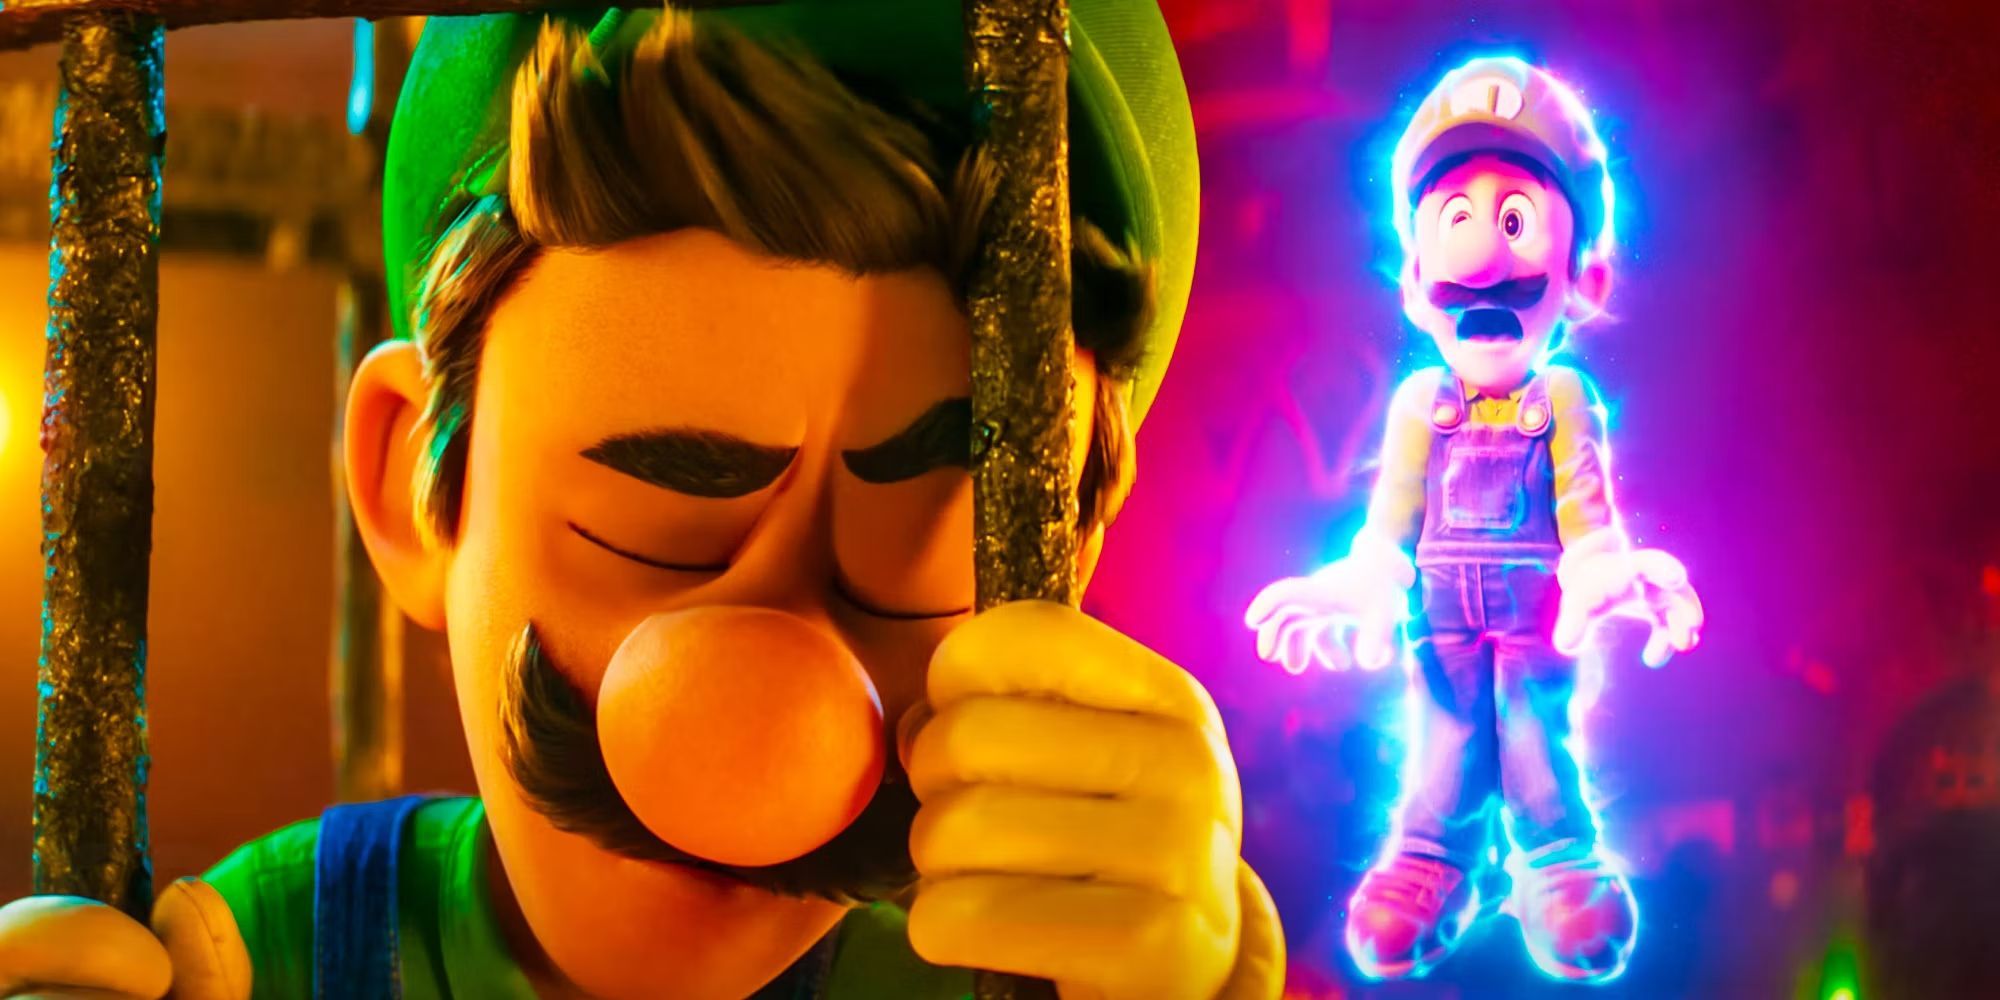 Two images of Luigi in The Super Mario Bros. Movie